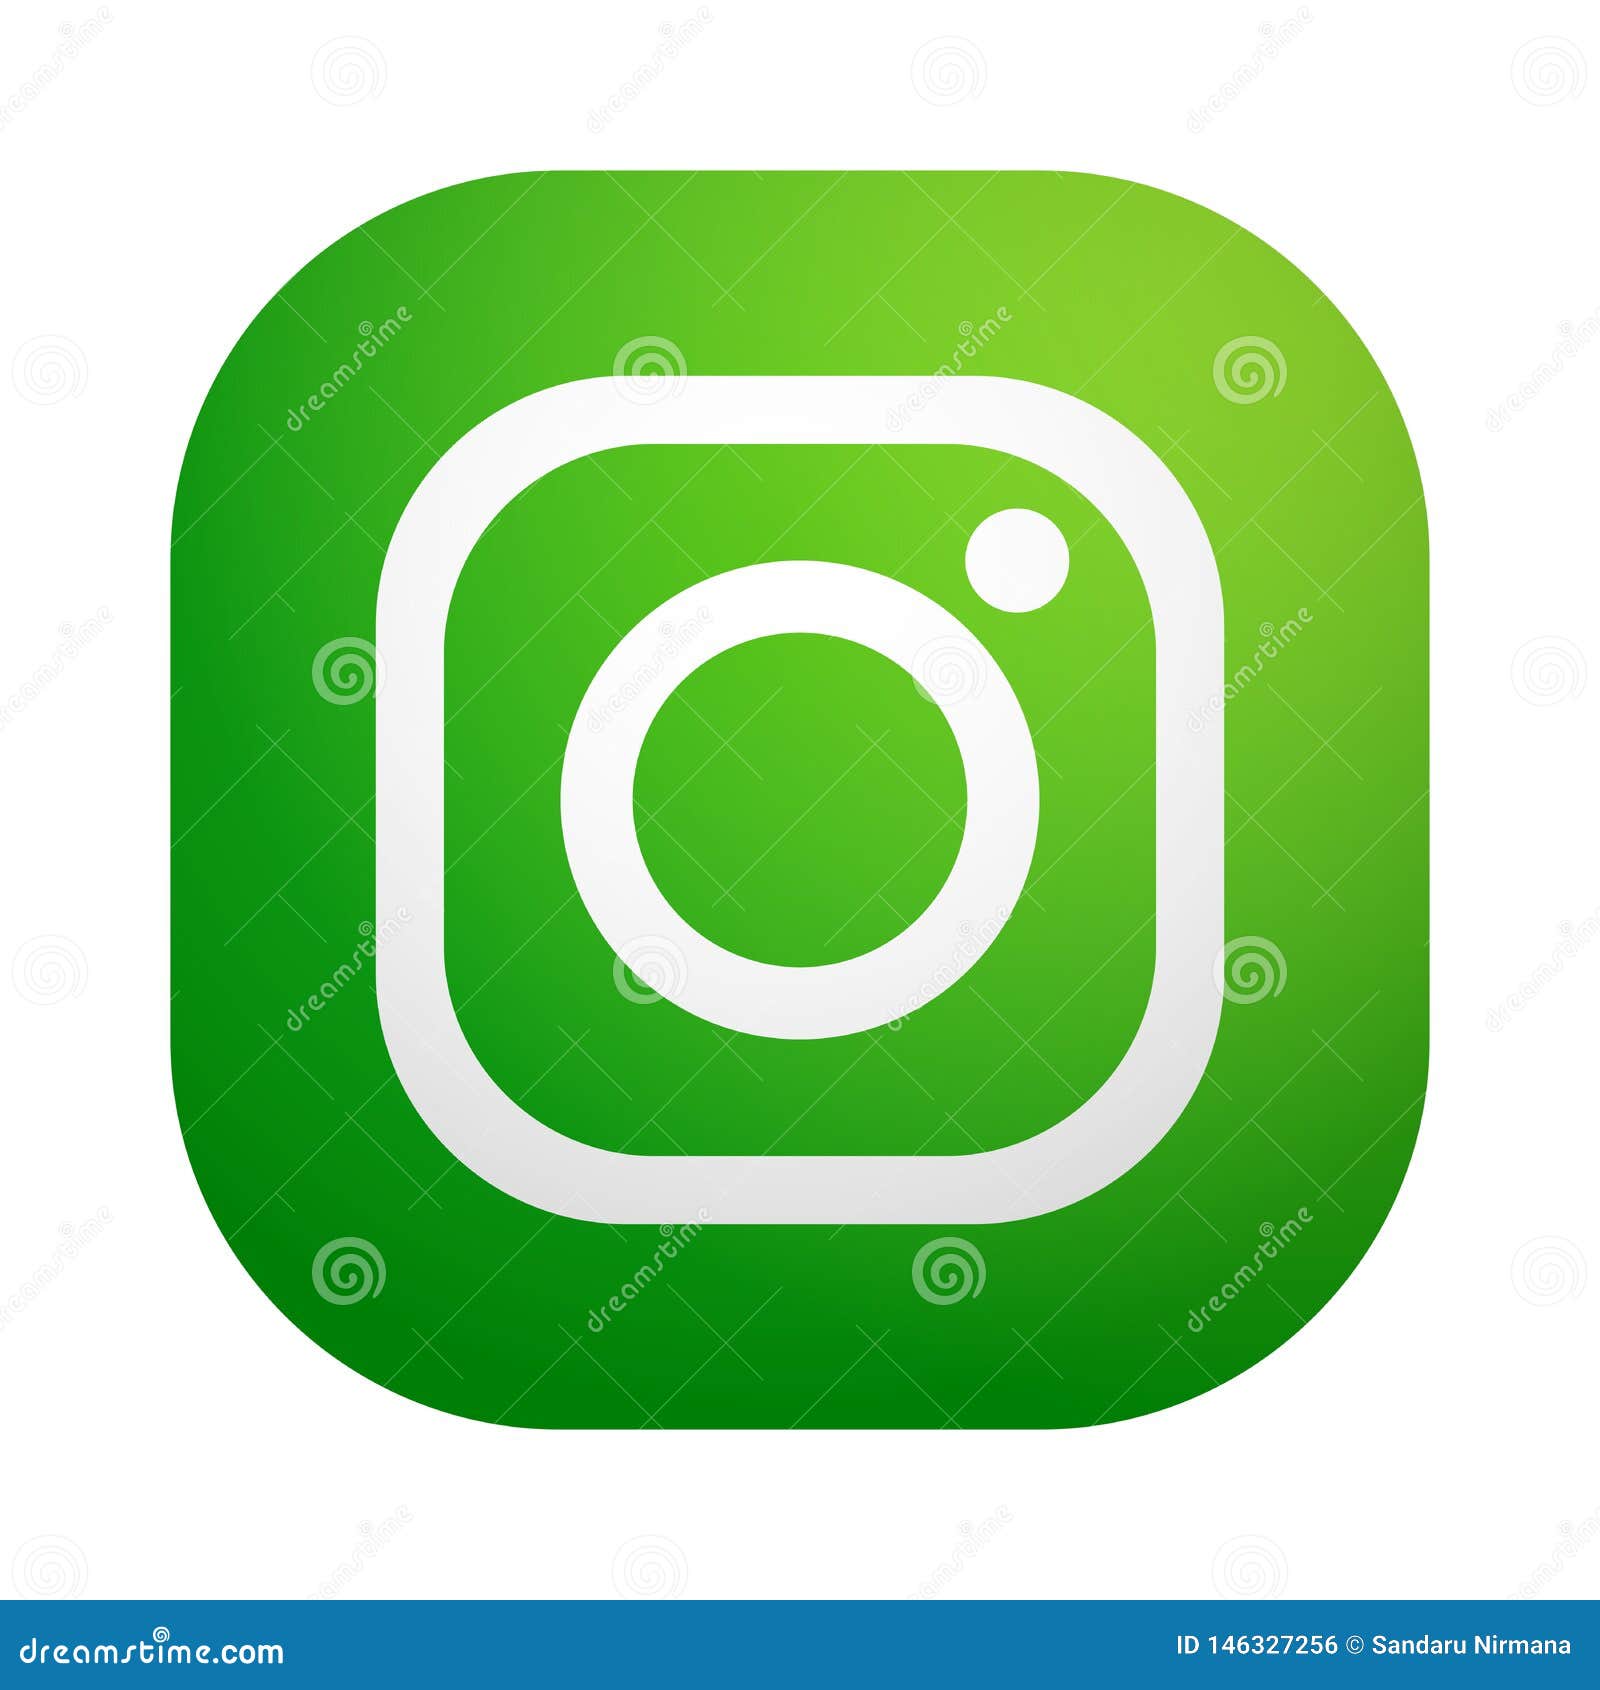 Instagram thiết kế một logo biểu tượng Camera Mới hấp dẫn với vector màu xanh hiện đại. Nền xanh Instagram đẹp mắt cùng với biểu tượng nổi bật sẽ khiến người xem không thể không chú ý đến những hình ảnh độc đáo của bạn.